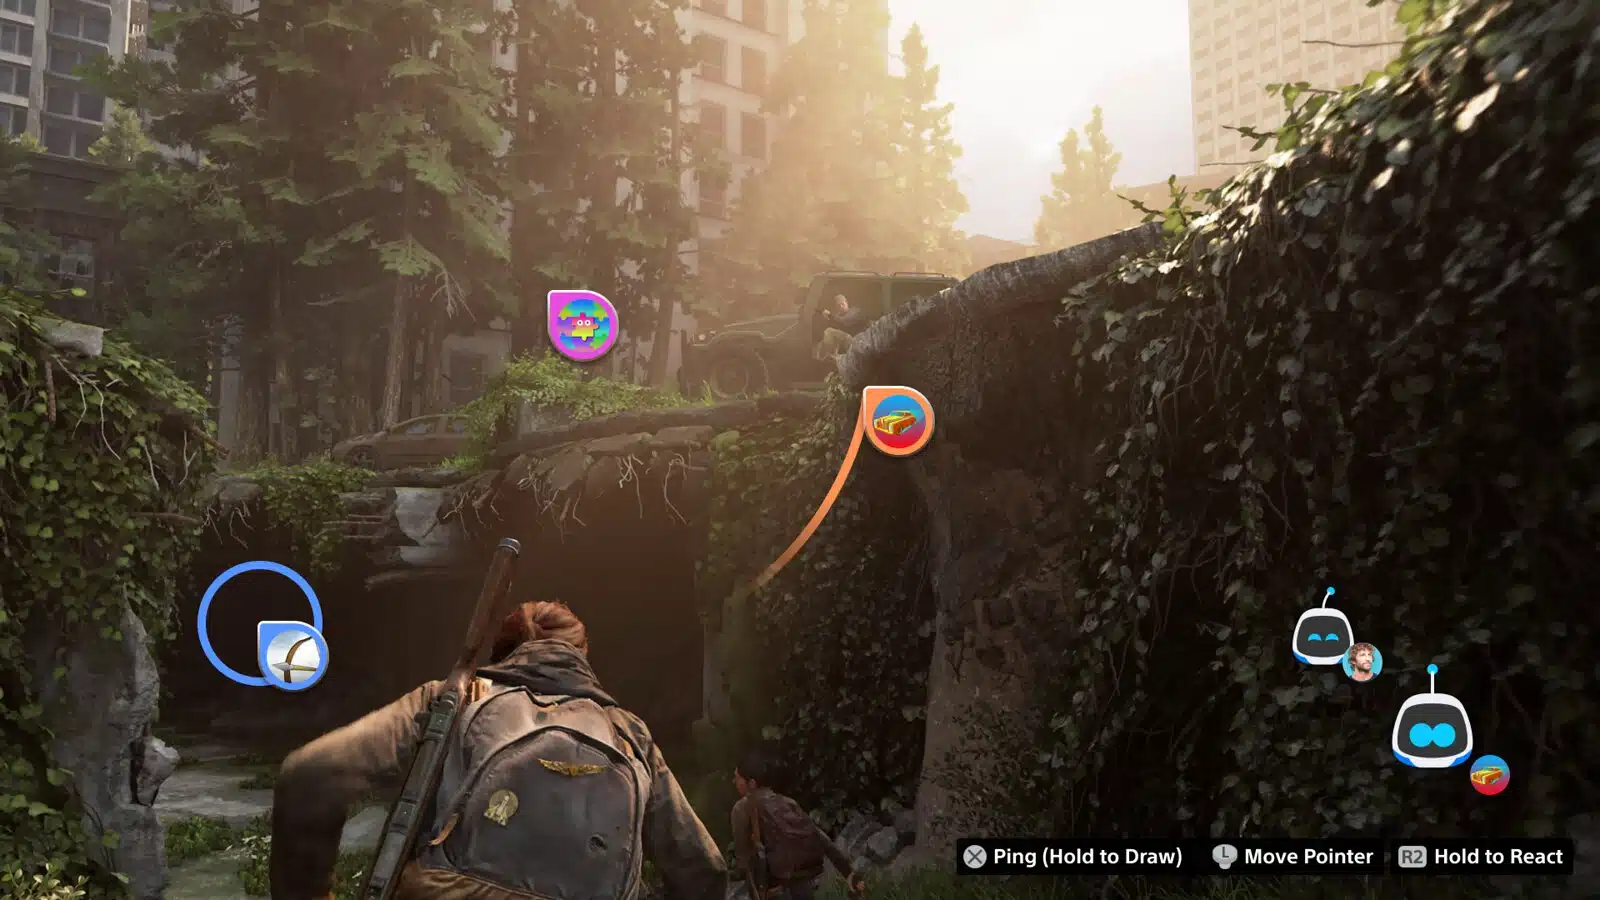 Atualização beta do PS5 interação no Share Screen em The Last of Us com Ellie caminhando nos escombros